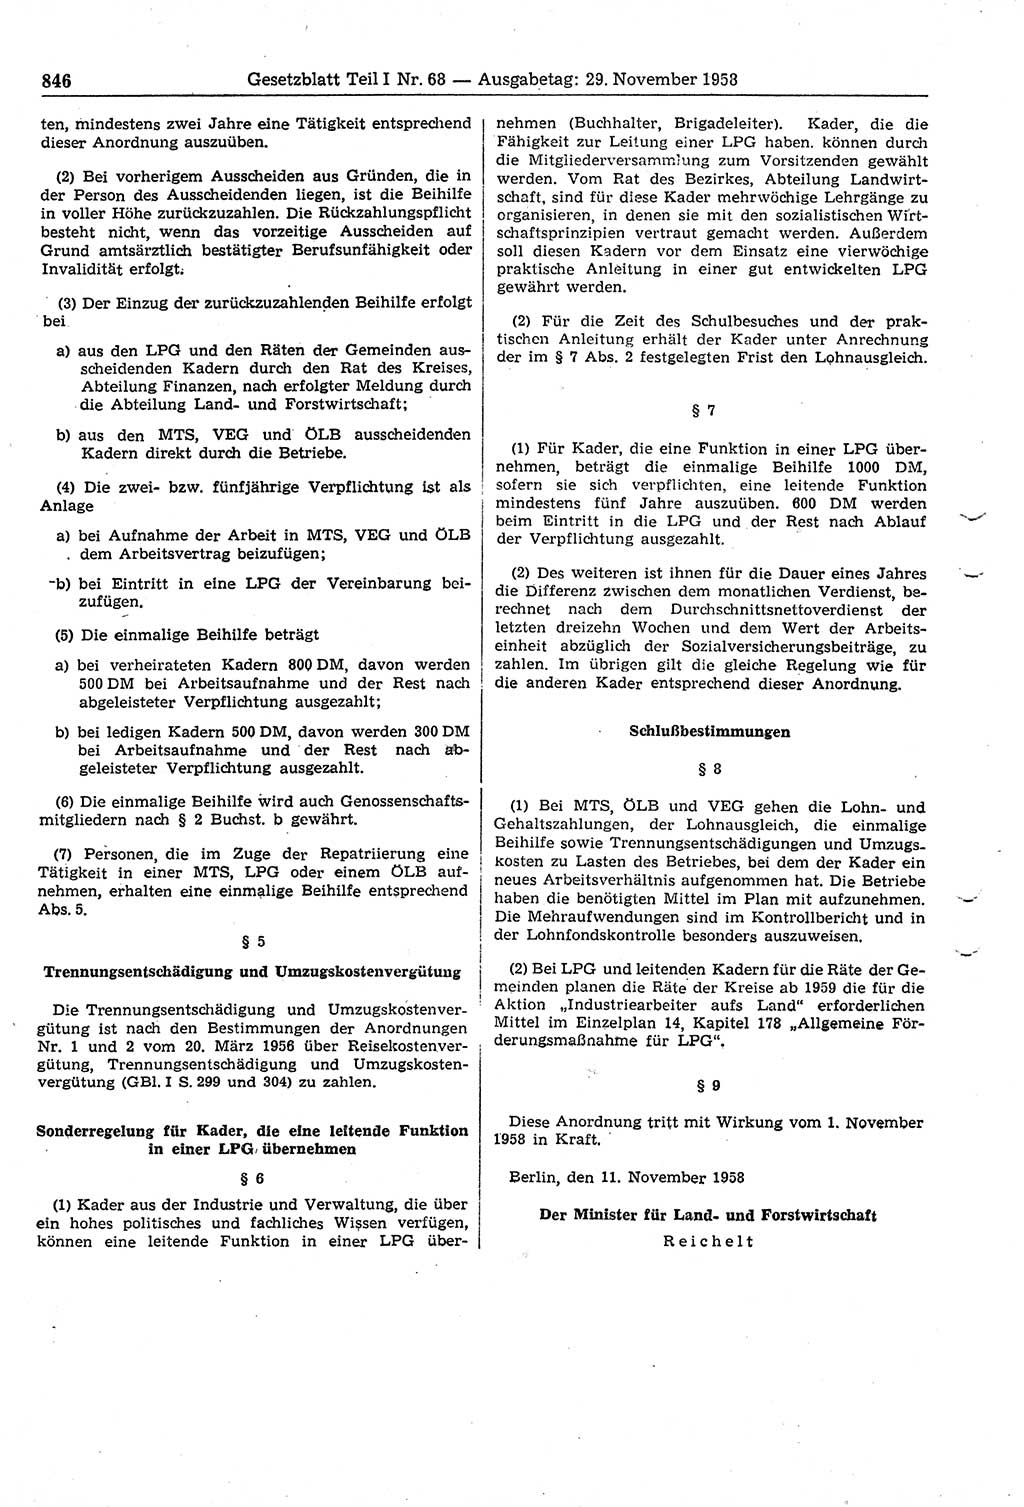 Gesetzblatt (GBl.) der Deutschen Demokratischen Republik (DDR) Teil Ⅰ 1958, Seite 846 (GBl. DDR Ⅰ 1958, S. 846)